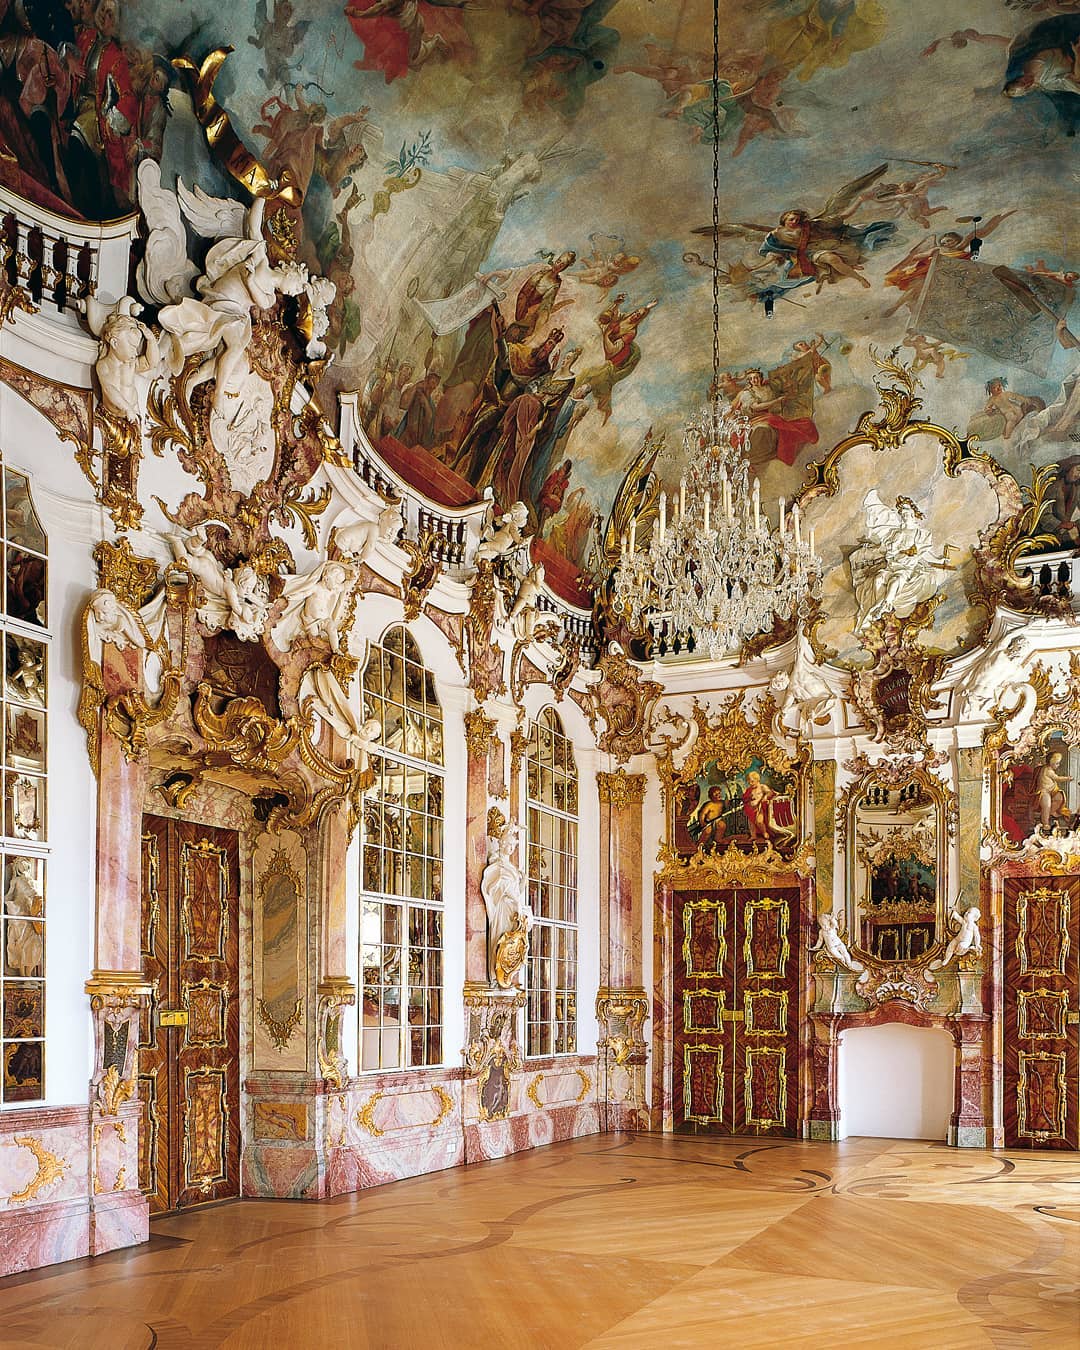 法国凡尔赛宫和莫奈花园之旅——寻找大师画中的光影和色彩